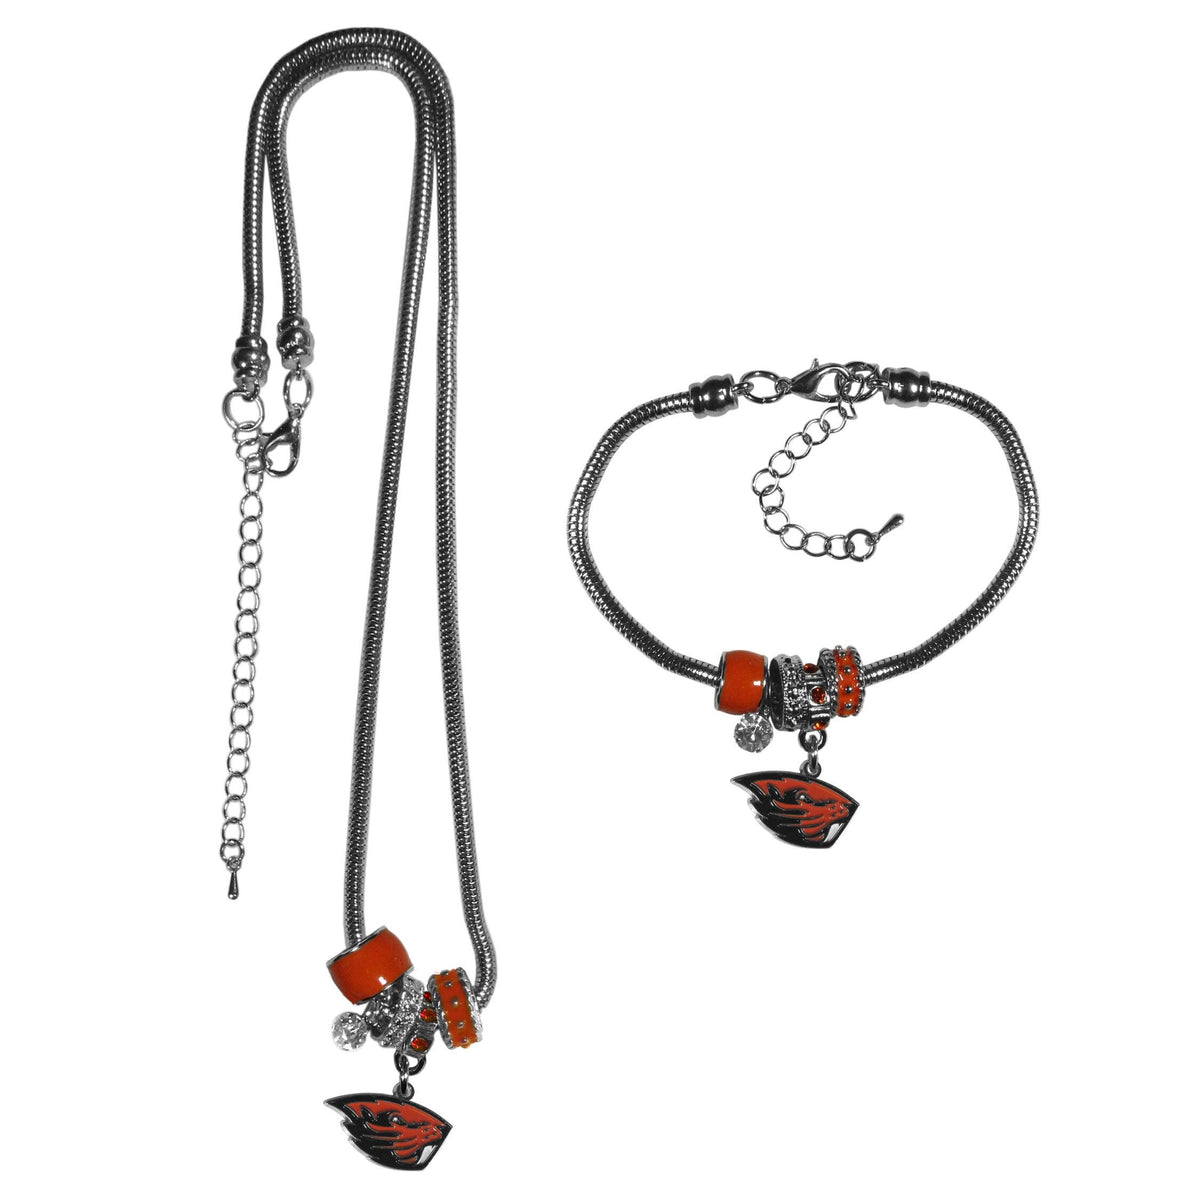 Oregon St. Beavers Euro Bead Necklace and Bracelet Set - Flyclothing LLC